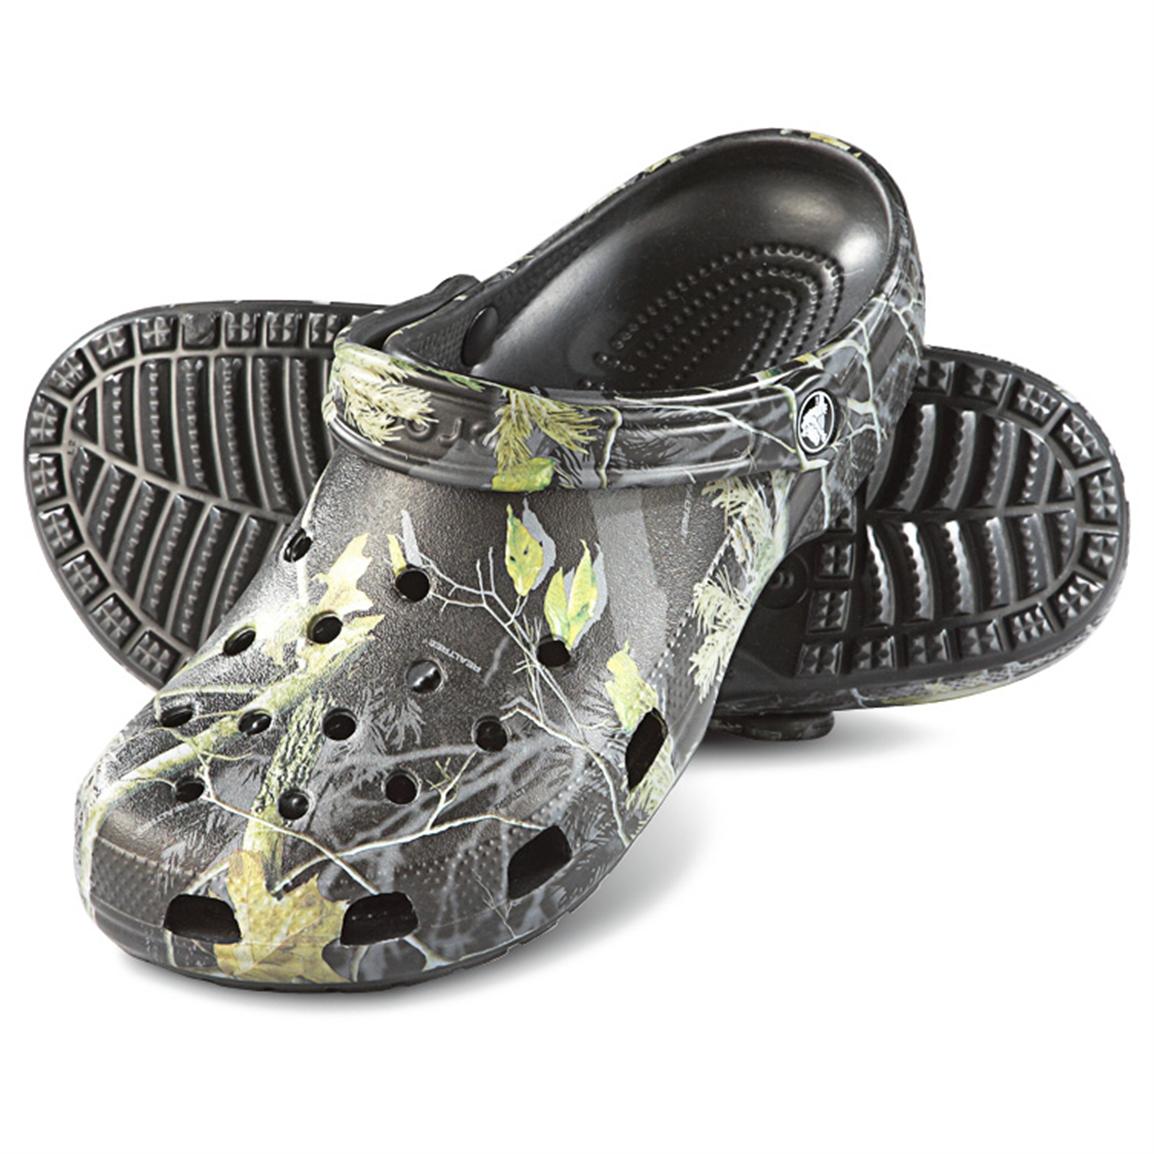 Men's Crocs Classic Clogs, Realtree AP / Black - 582178, Casual Shoes ...